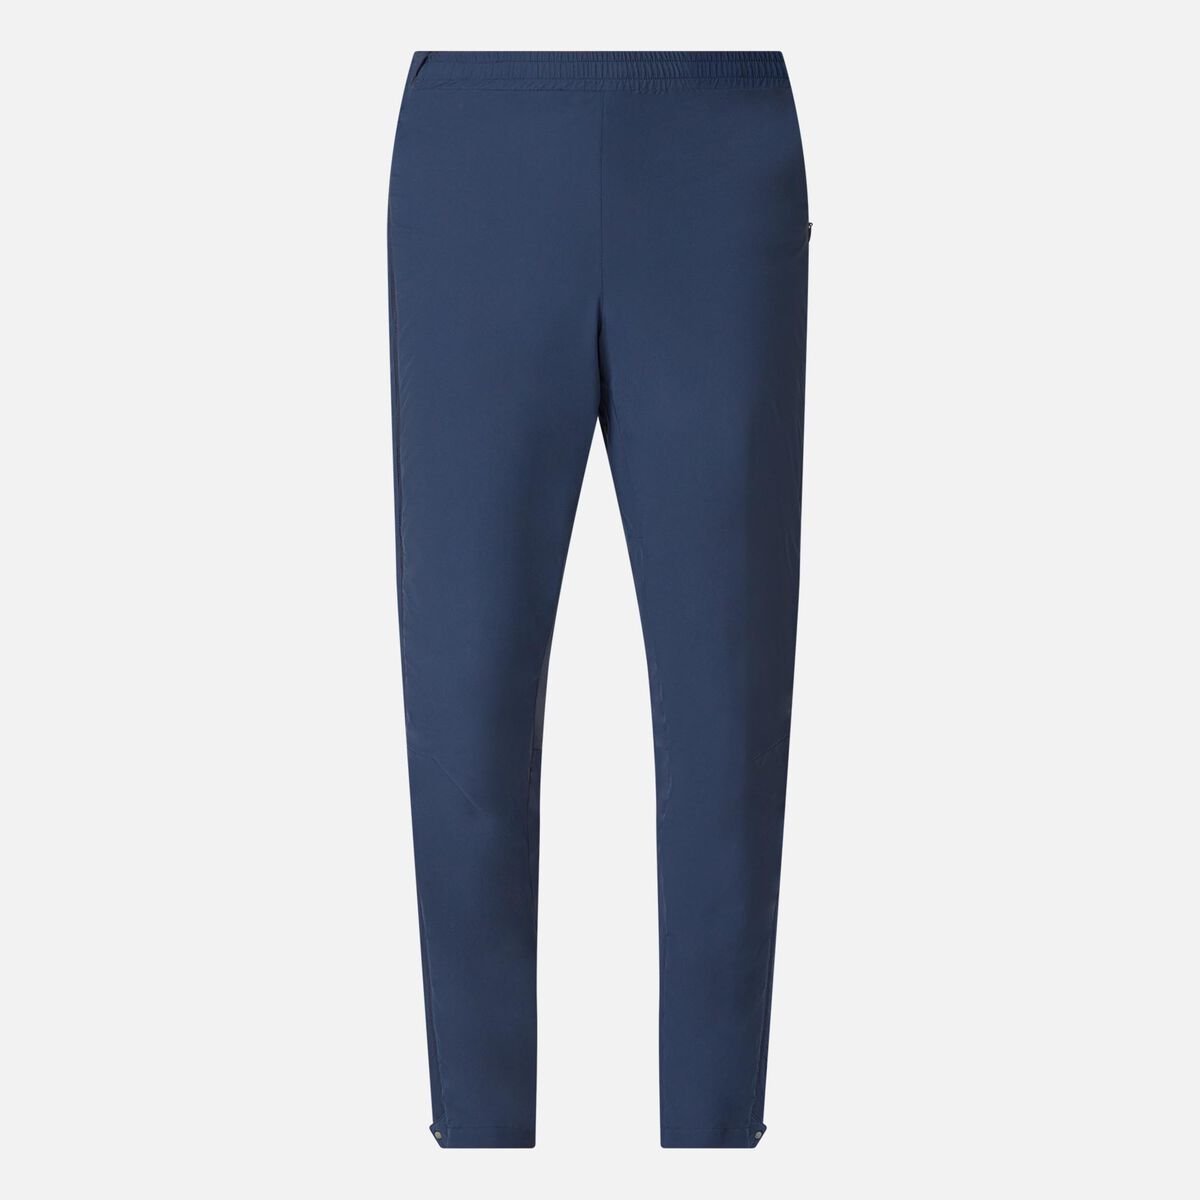 Rossignol Pantalon de ski Active Versatile XC homme blue